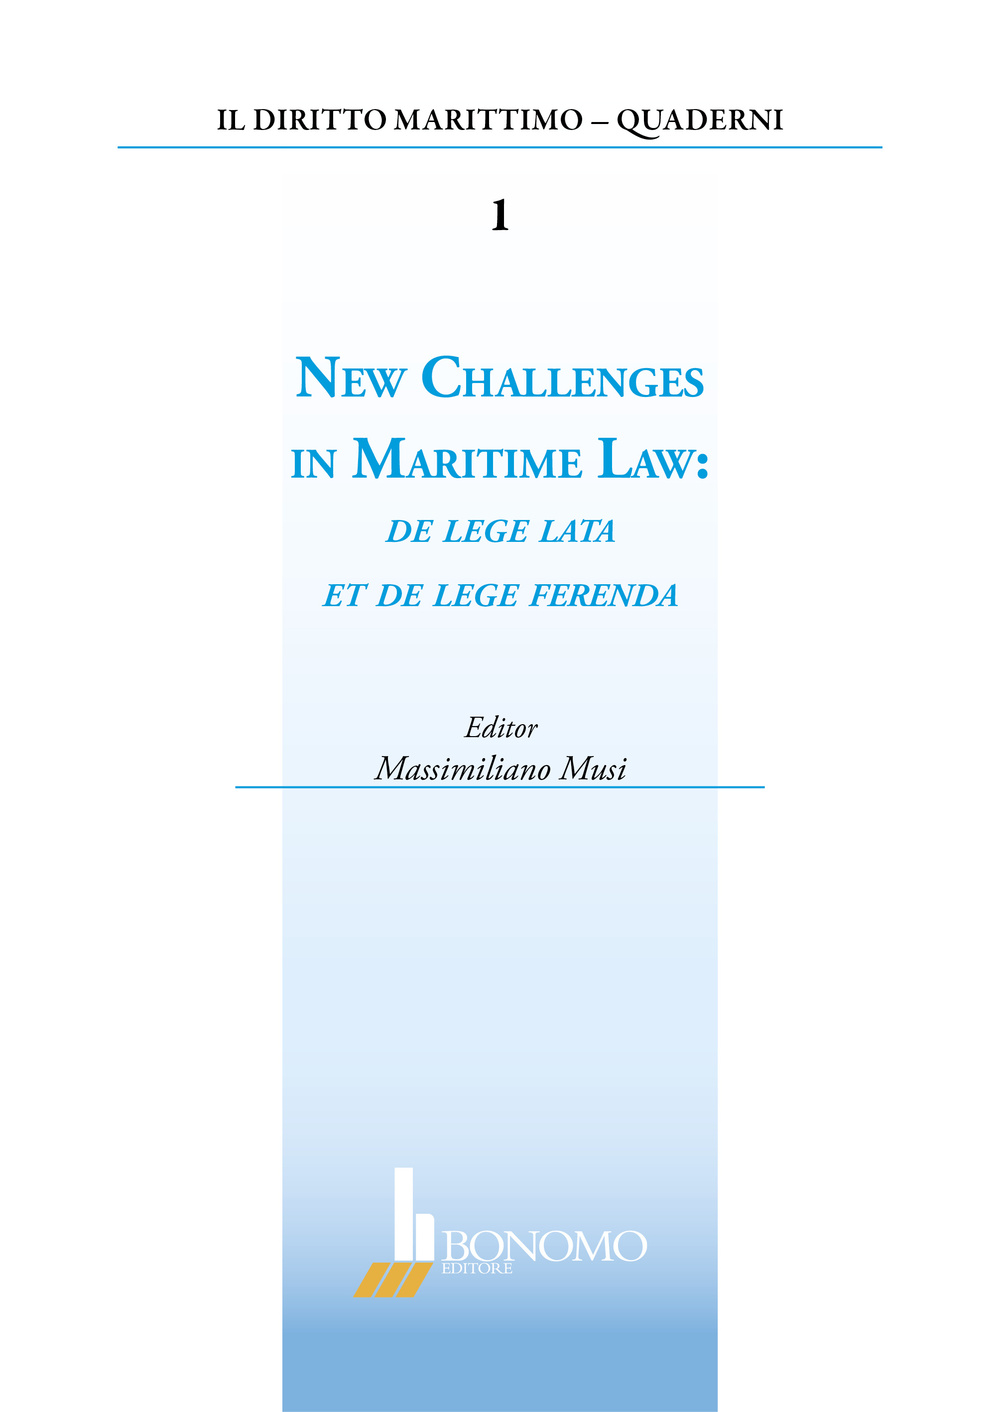 New challenges in marittime law. De lege lata et de lege ferenda